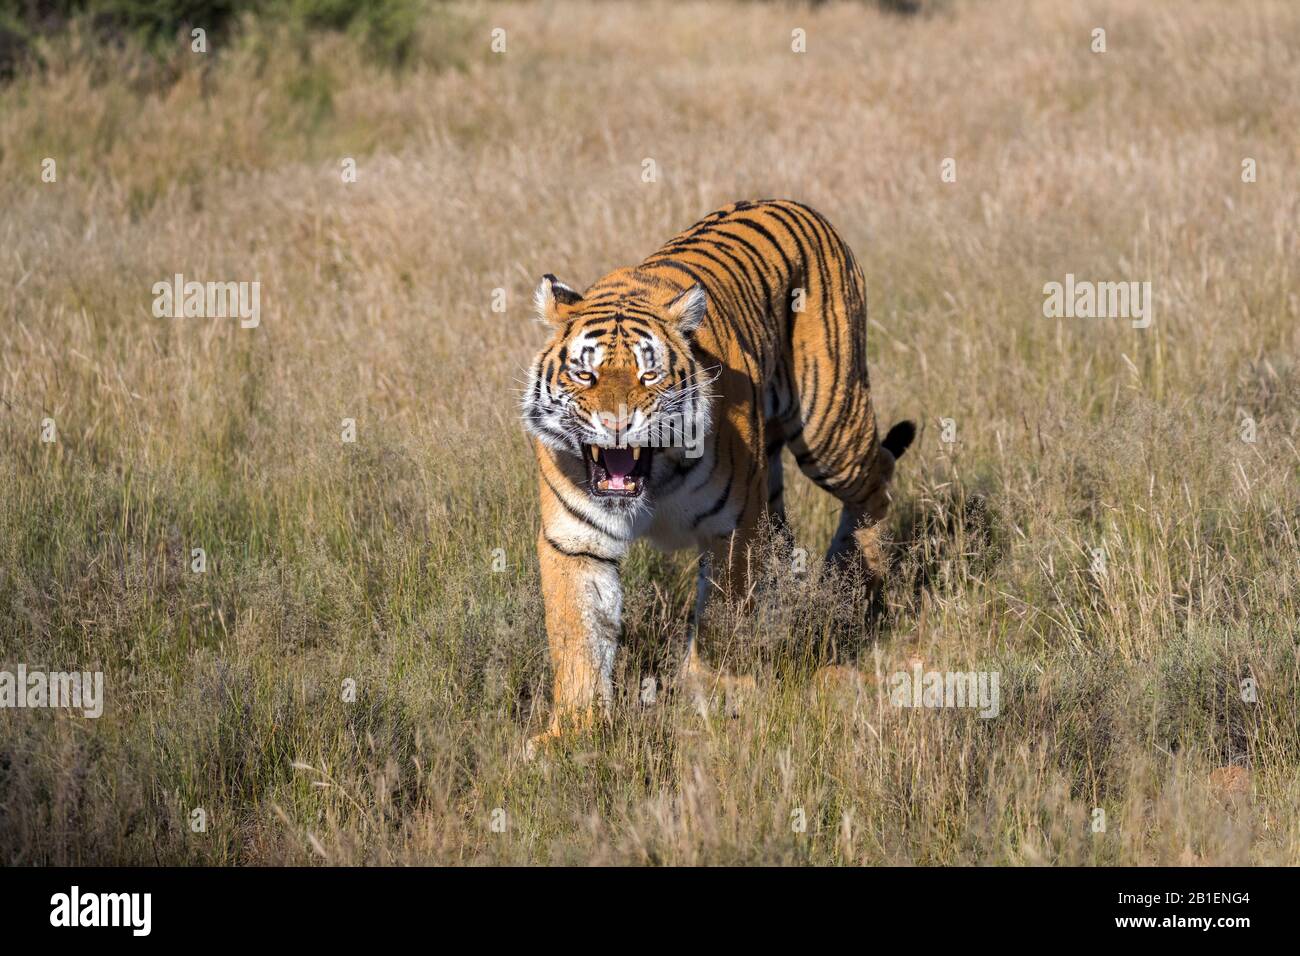 Tigre Asiatica (Bengala) (Panthera tigris tigris), femmina adulta, atteggiamento aggressivo, Riserva privata, Sudafrica Foto Stock